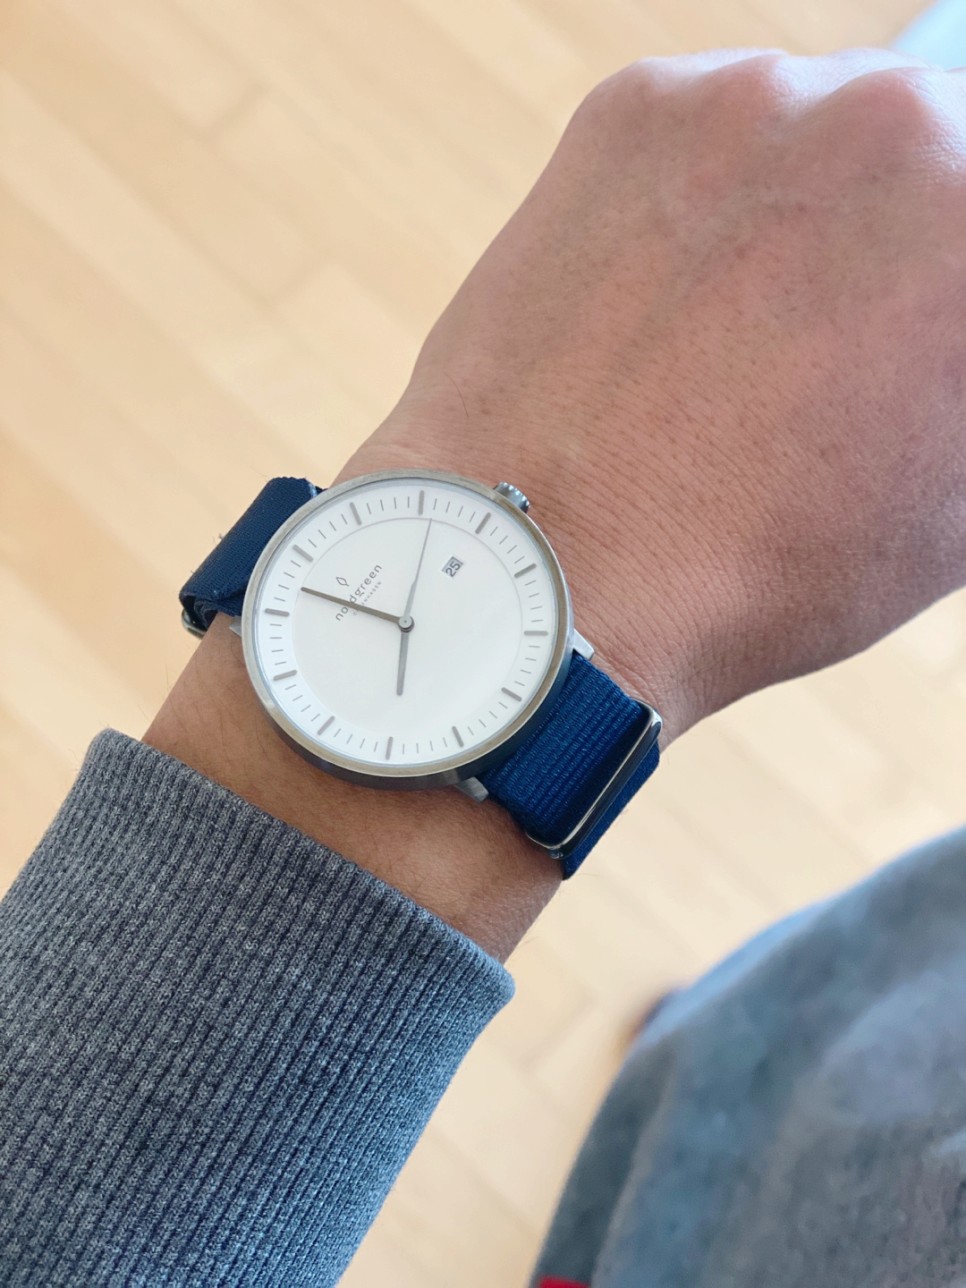 덴마크 브랜드 노드그린 할인코드 블랙프라이데이 여자 손목시계 커플시계